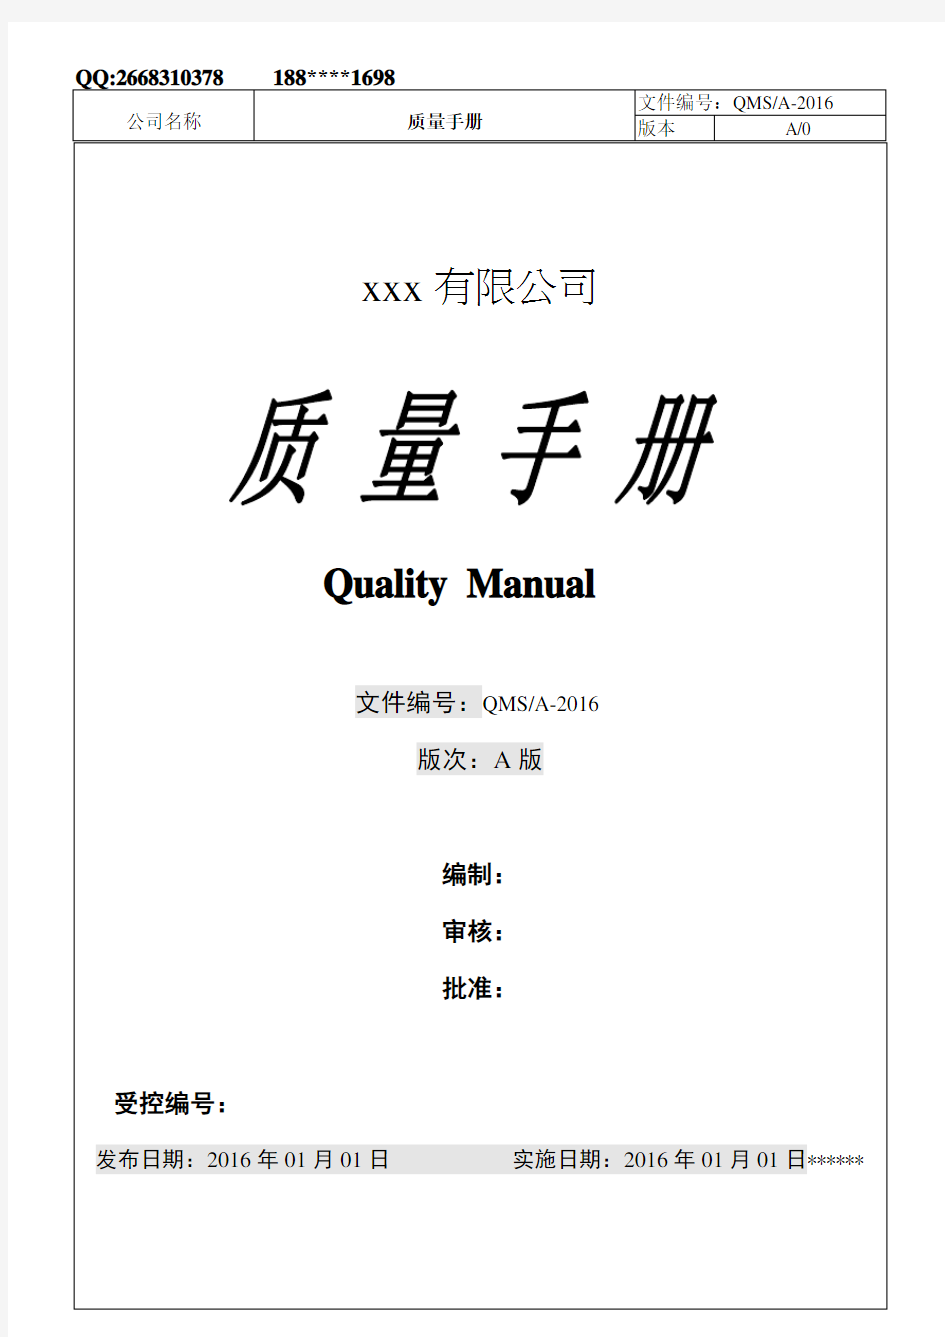 2015版ISO9001最新换版质量手册